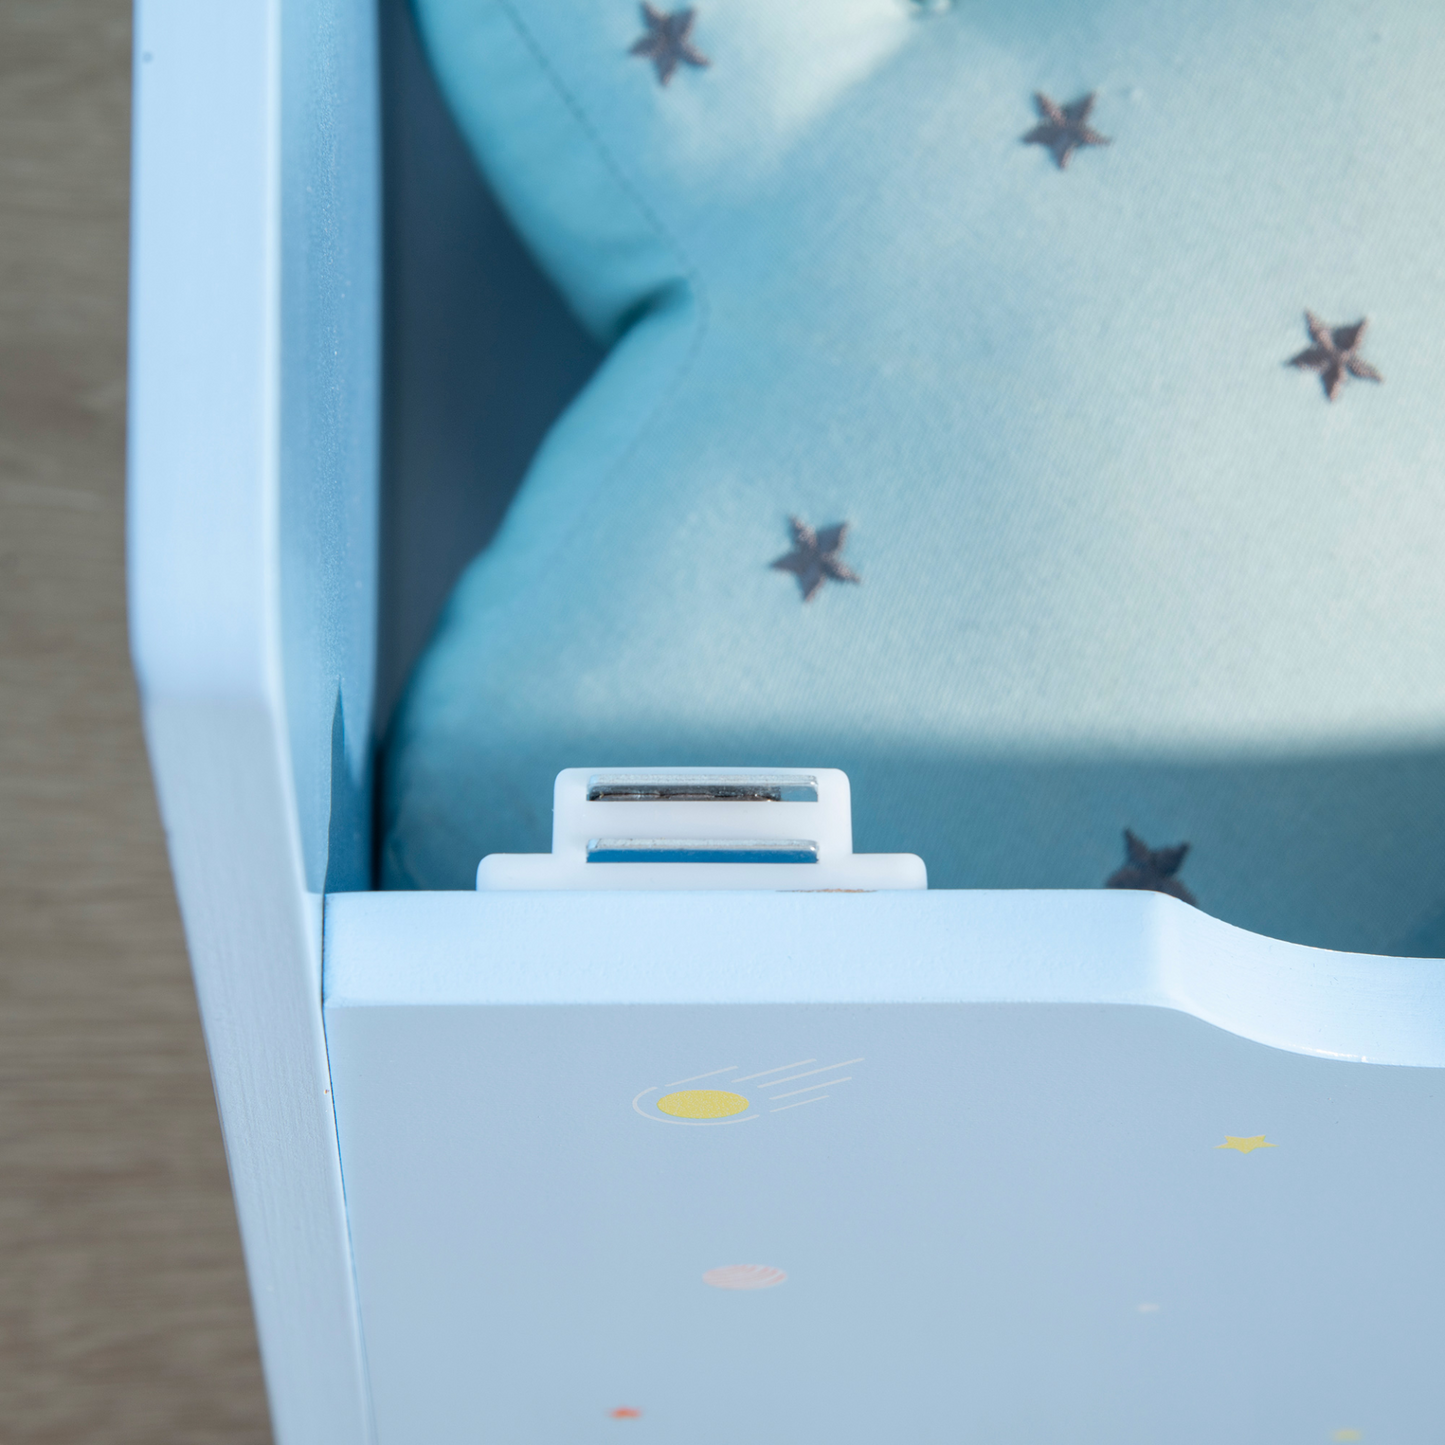 ZONEKIZ 2 In 1 Wooden Toy Box, Kids Storage Bench, Toy Chest with Safety Rod - Blue